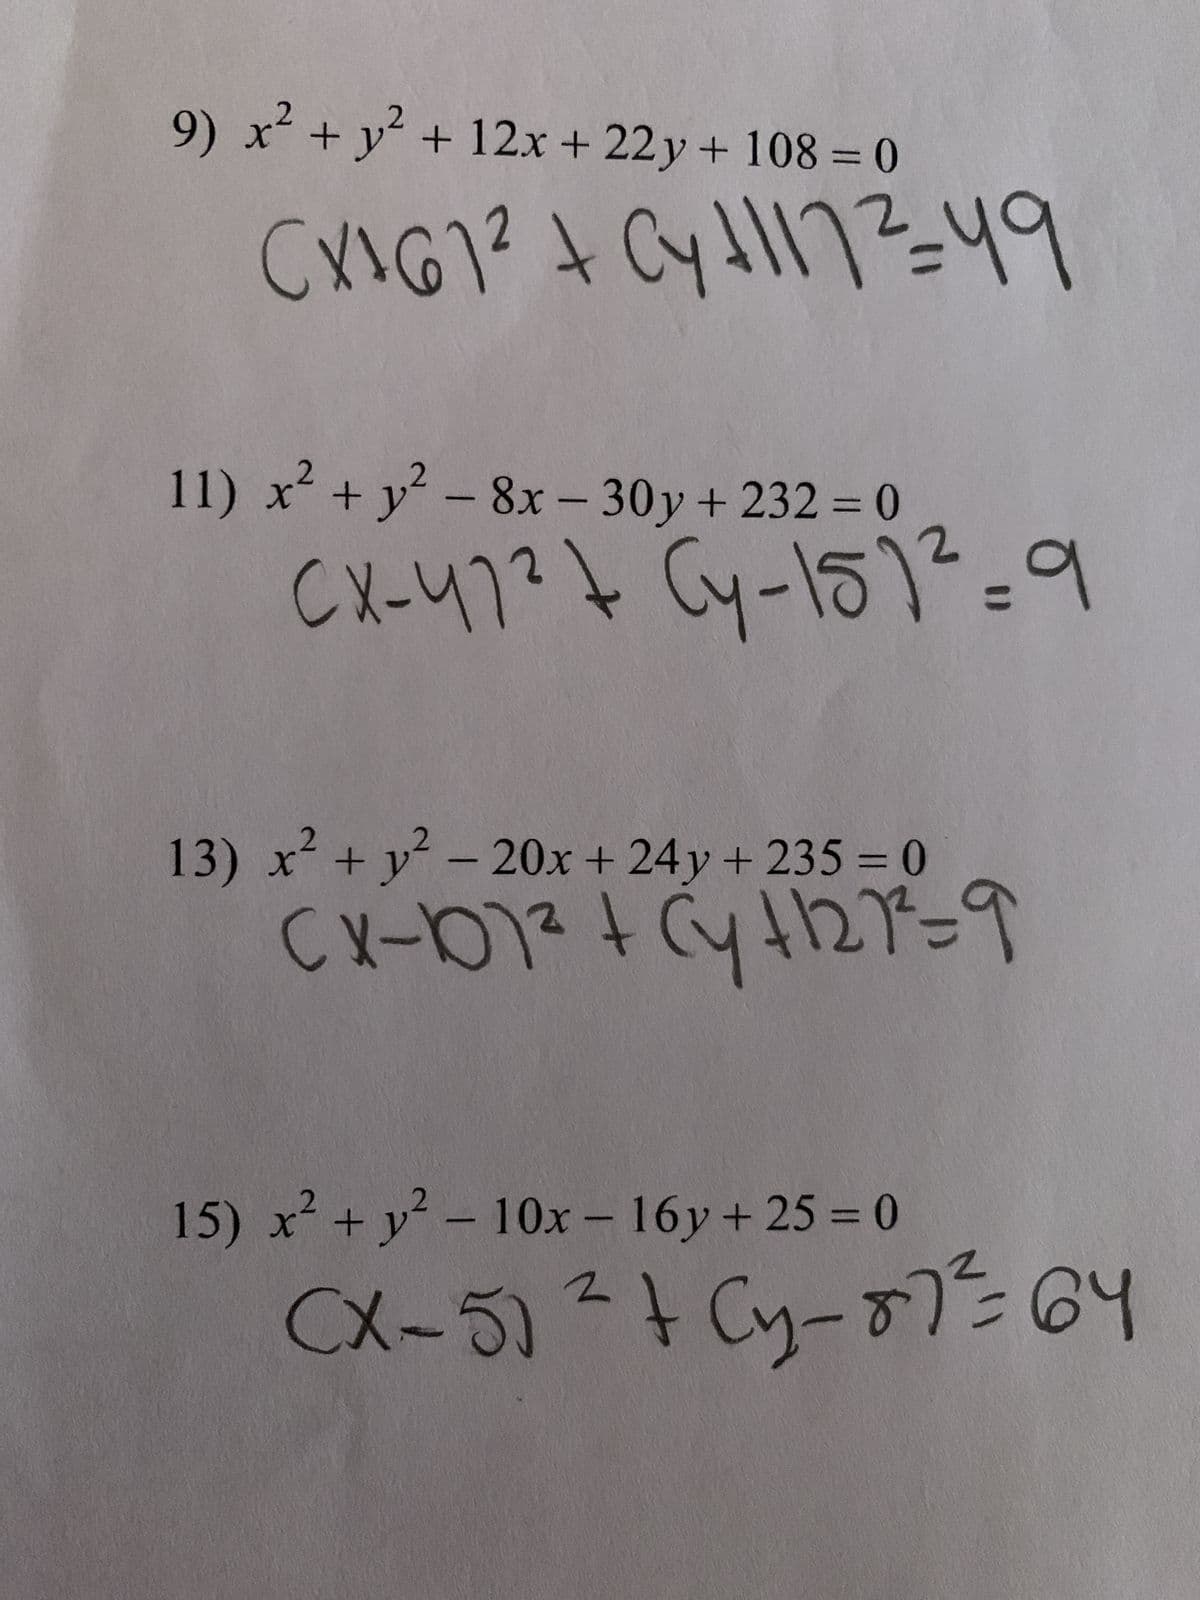 2
9) x² + y² + 12x + 22y + 108 = 0
CX1G1²+ Cy1172-49
CX-47² \ Cy-151²=9
CX-107² + (y +121²=9
CX-5) ² + (y₂-87² = 64
11) x² + y² - 8x - 30y + 232 = 0
13) x² + y² - 20x + 24y+235 = 0
15) x² + y² - 10x - 16y + 25 = 0